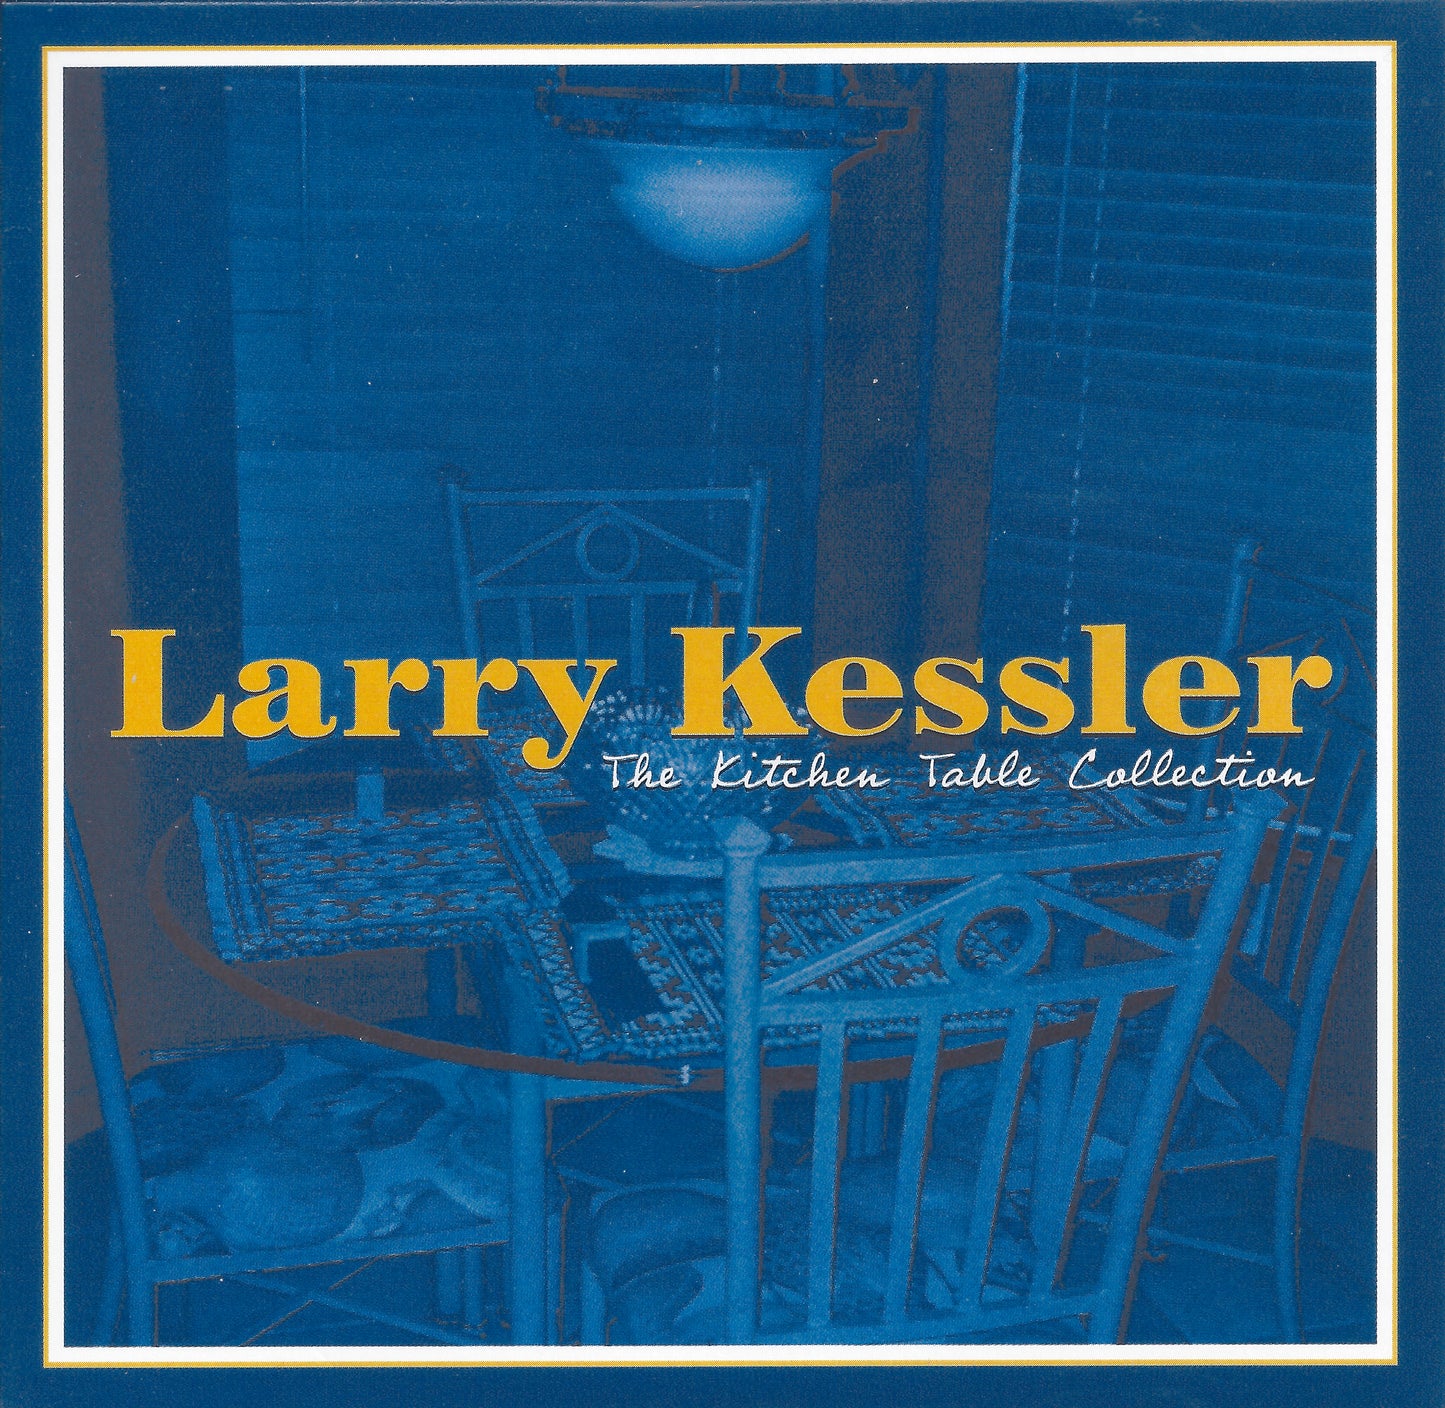 Syncopation (Instrumental) - Larry Kessler